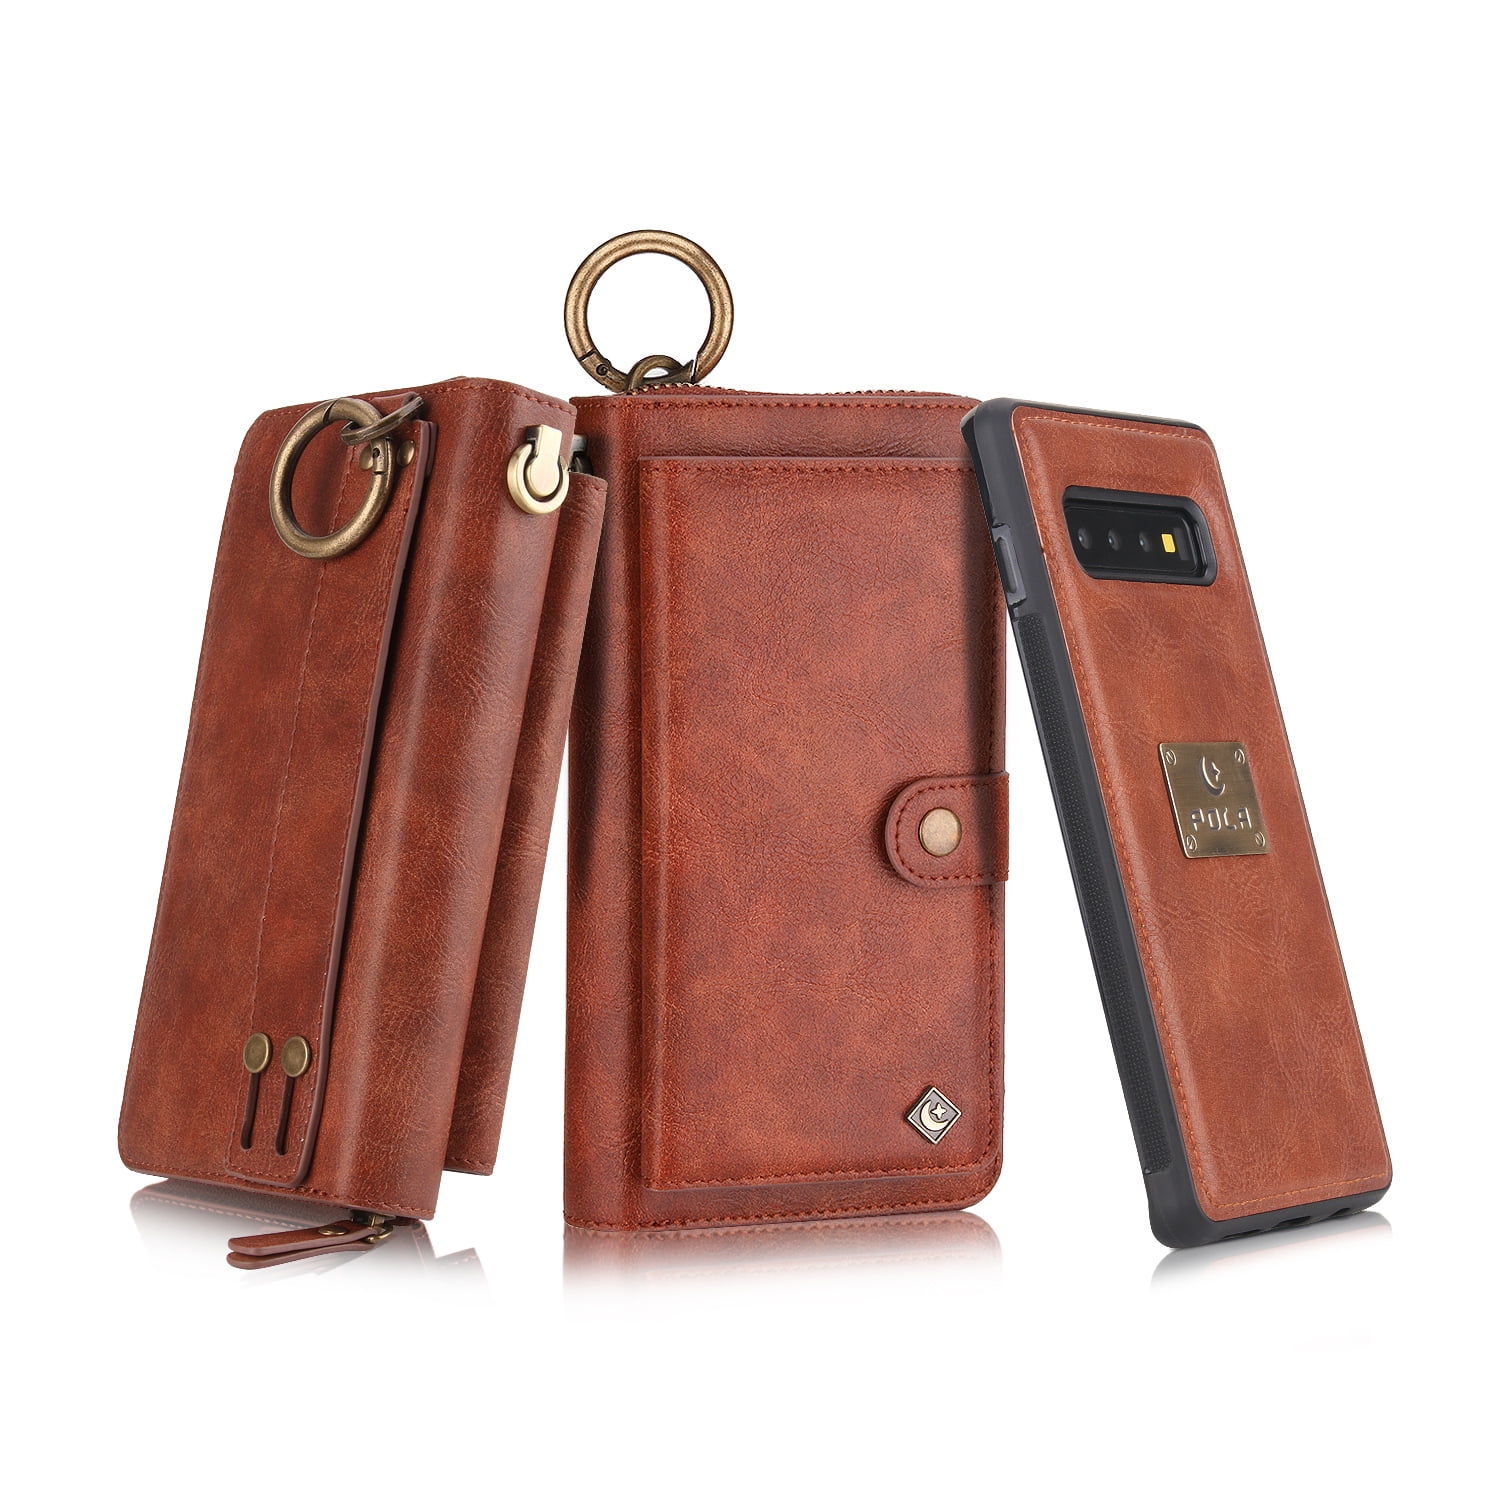 Super Slim Design Details about   Leather Card Holder Folded Note Storage Holds 2-4 Cards 